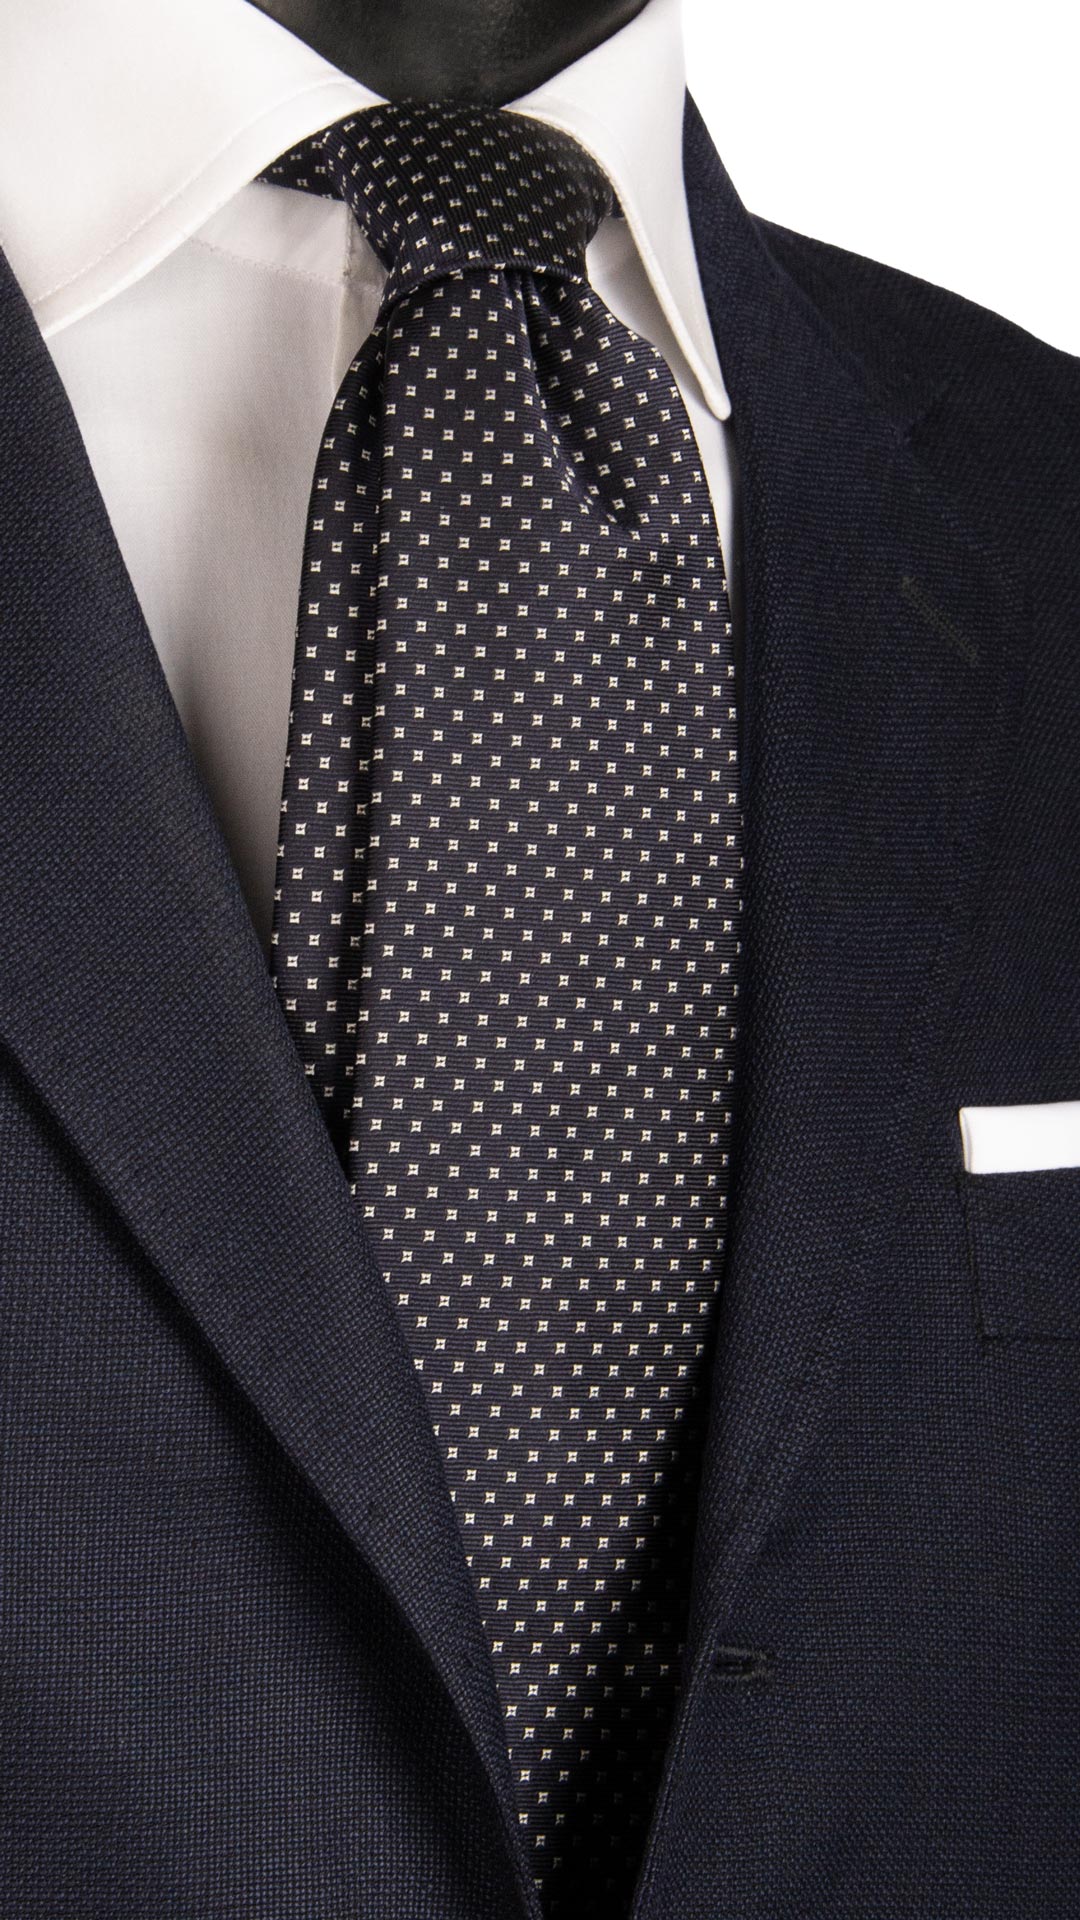 Cravatta da Cerimonia di Seta Blu Fantasia Bianca CY6631 Made in Italy Graffeo Cravatte